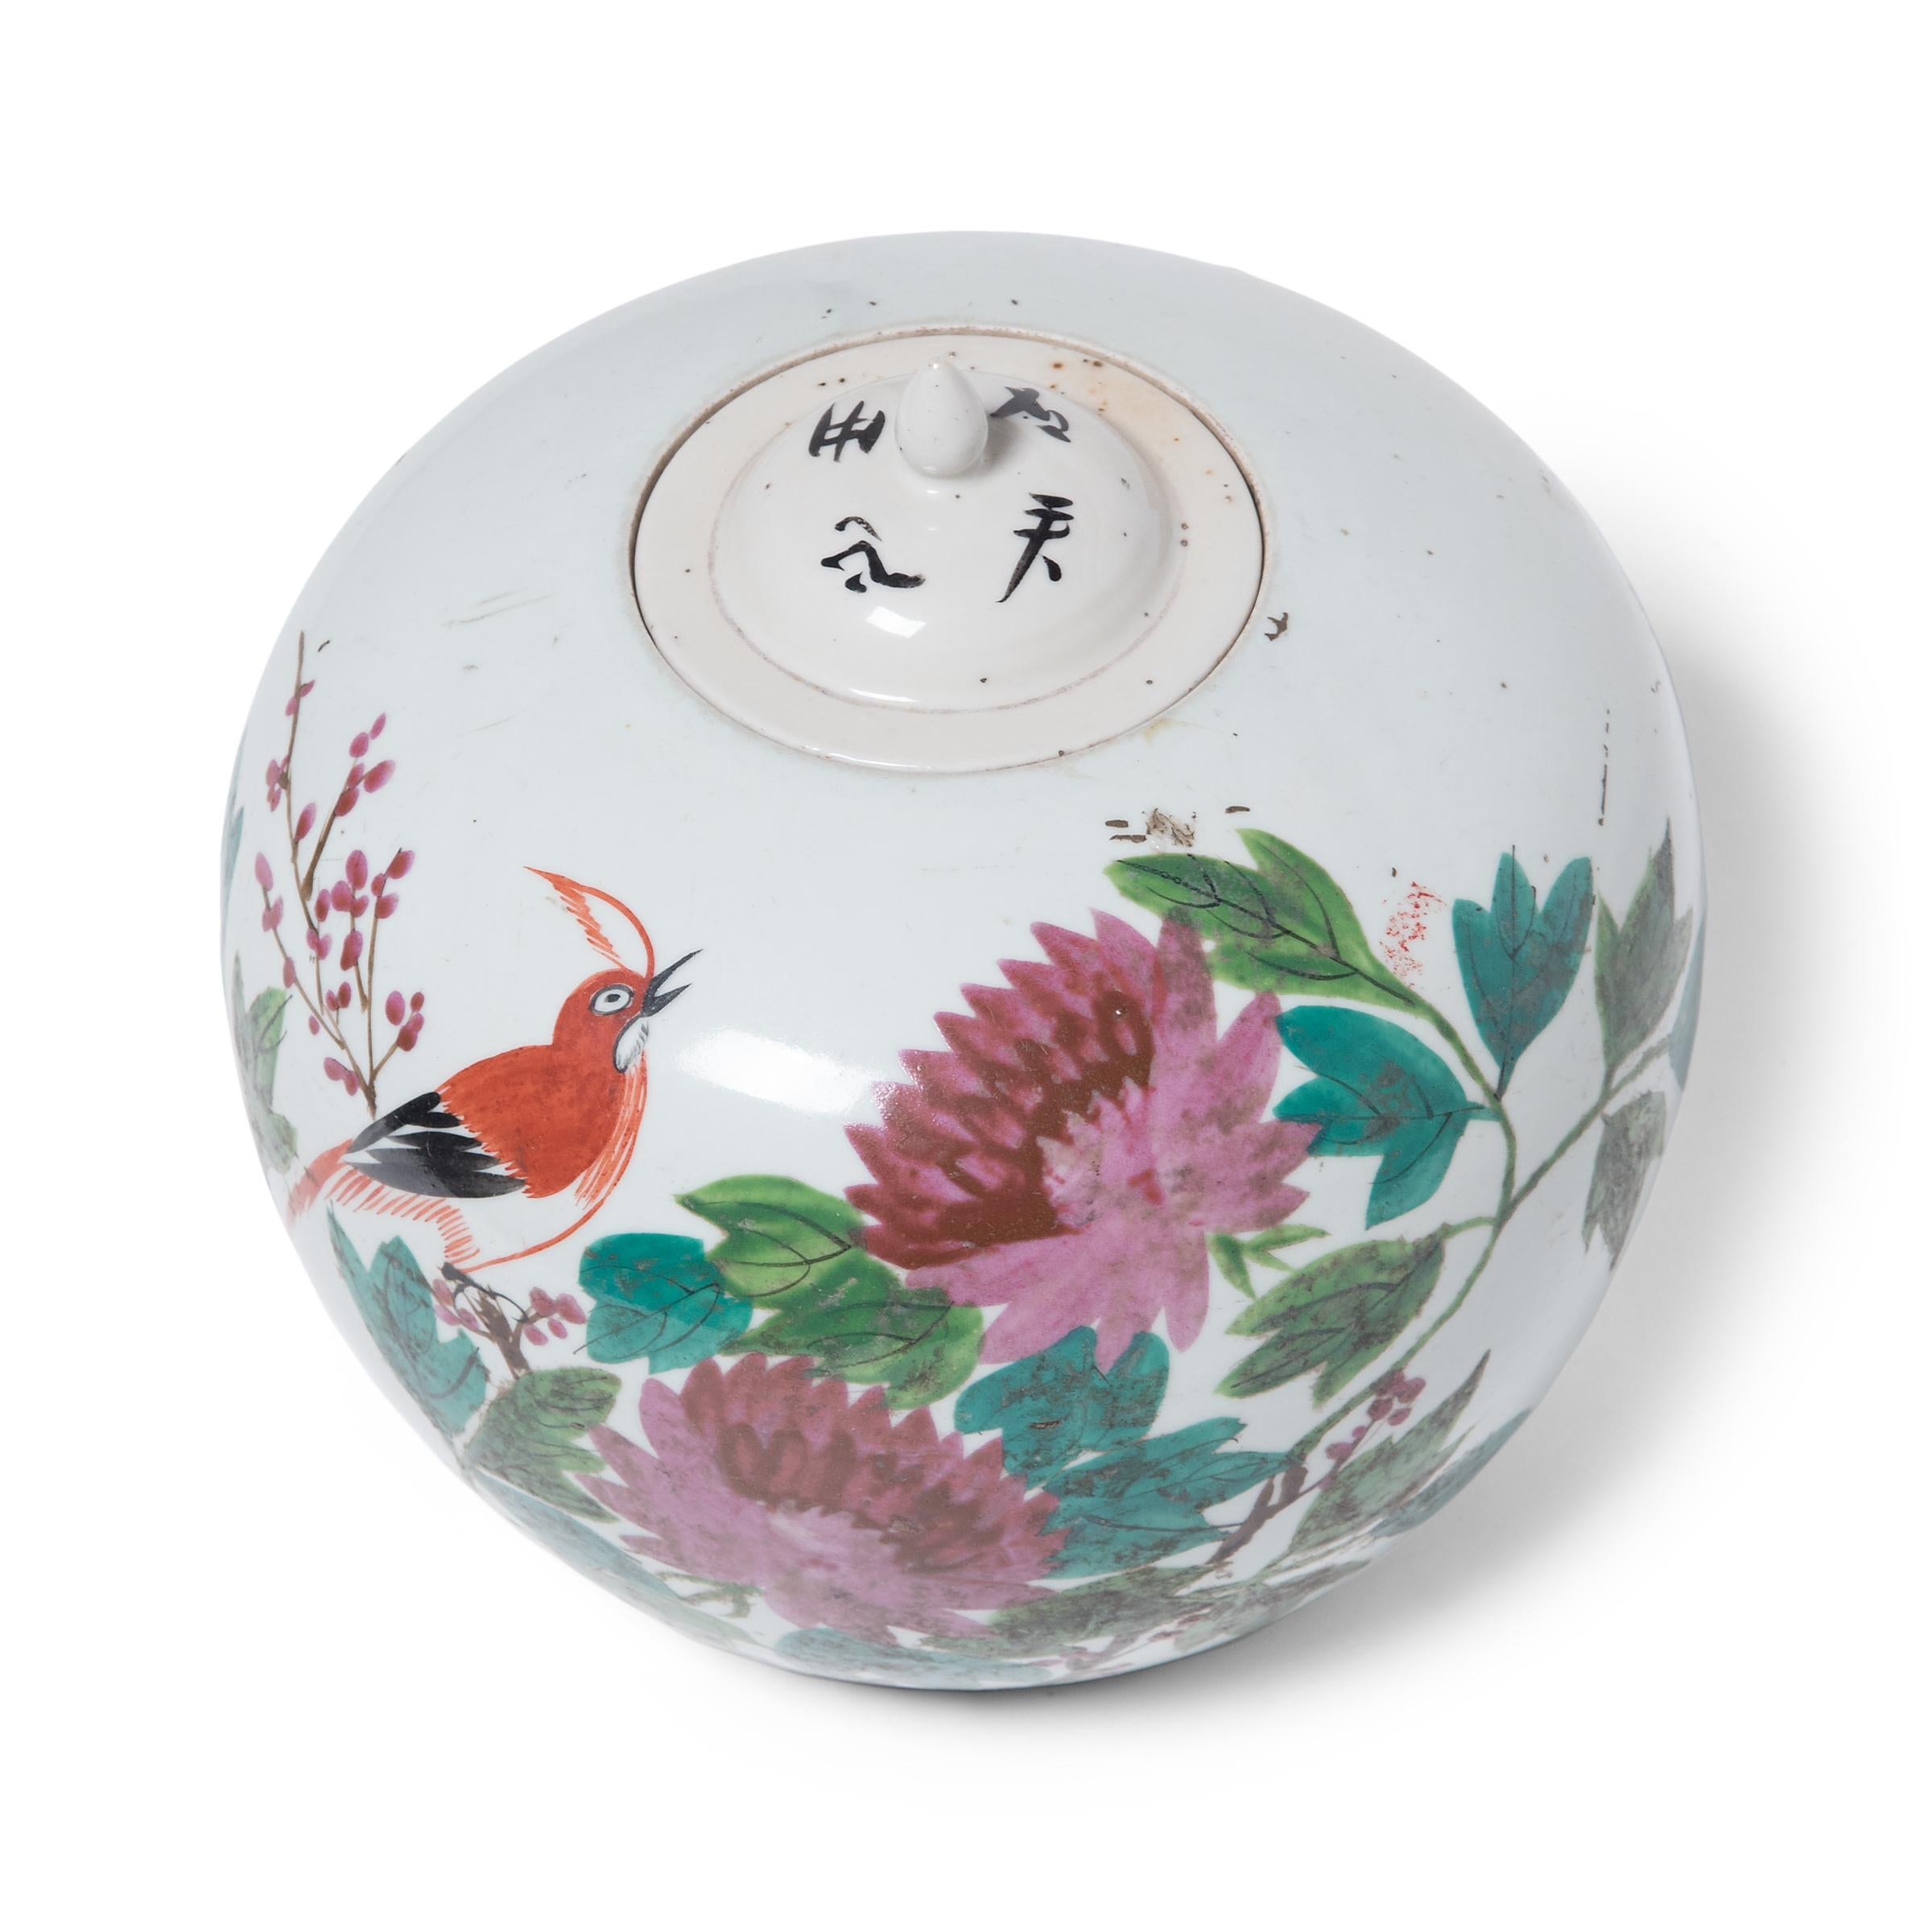 Glazed Chinese Peony Ginger Jar, c. 1900